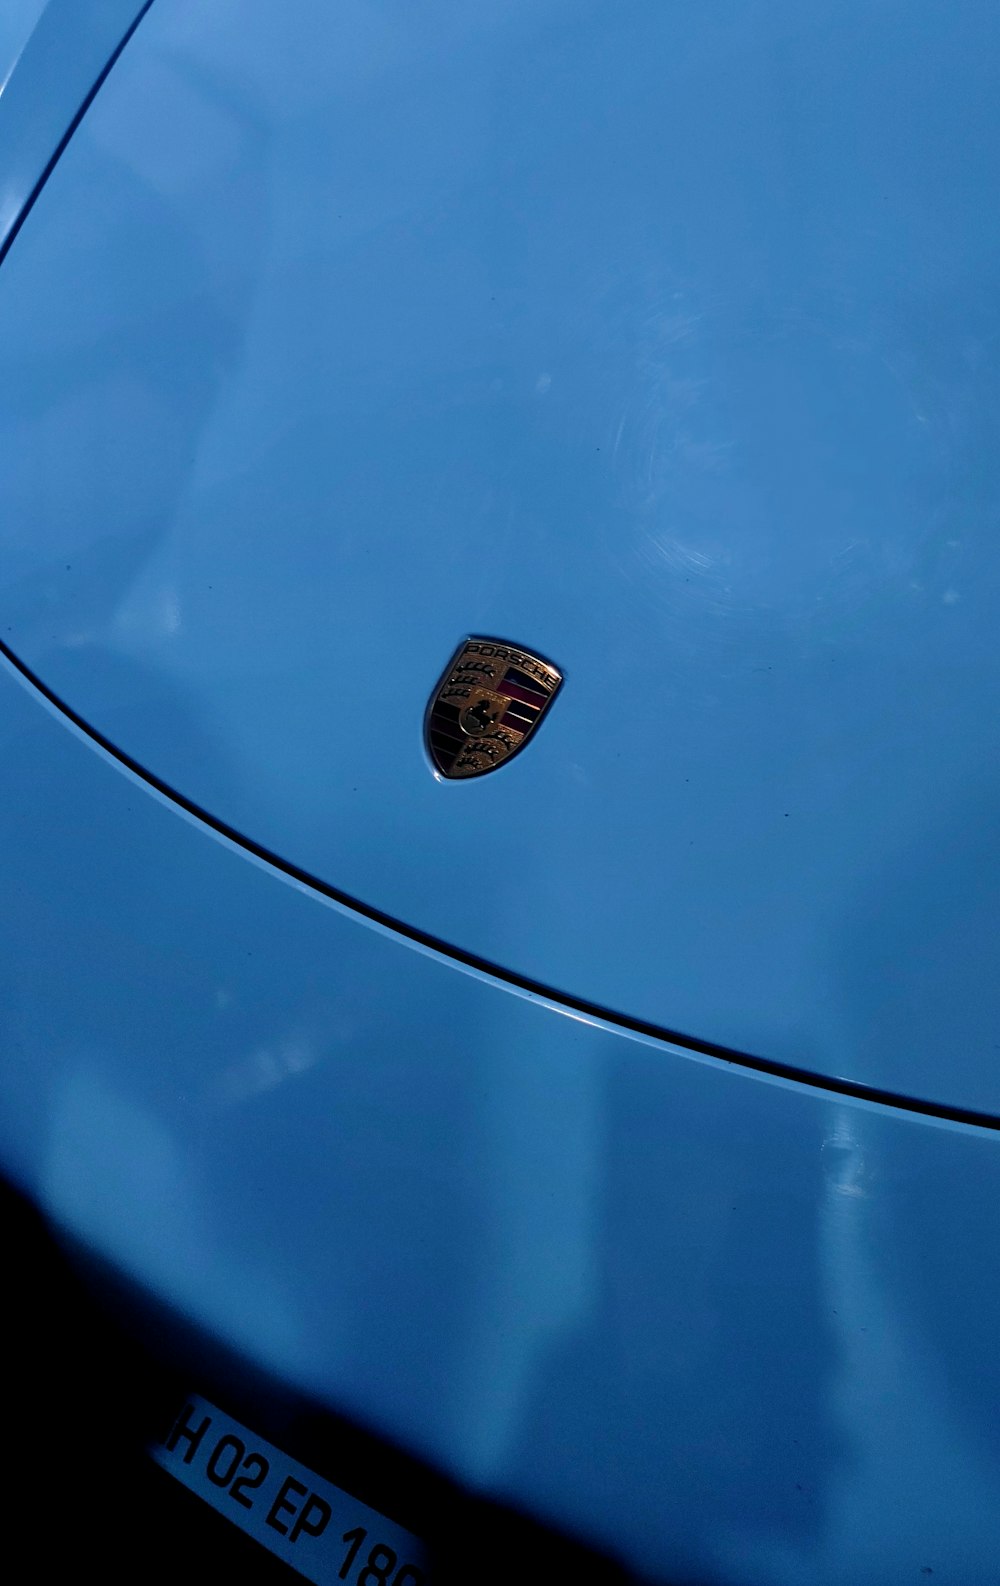 a close up of a blue sports car